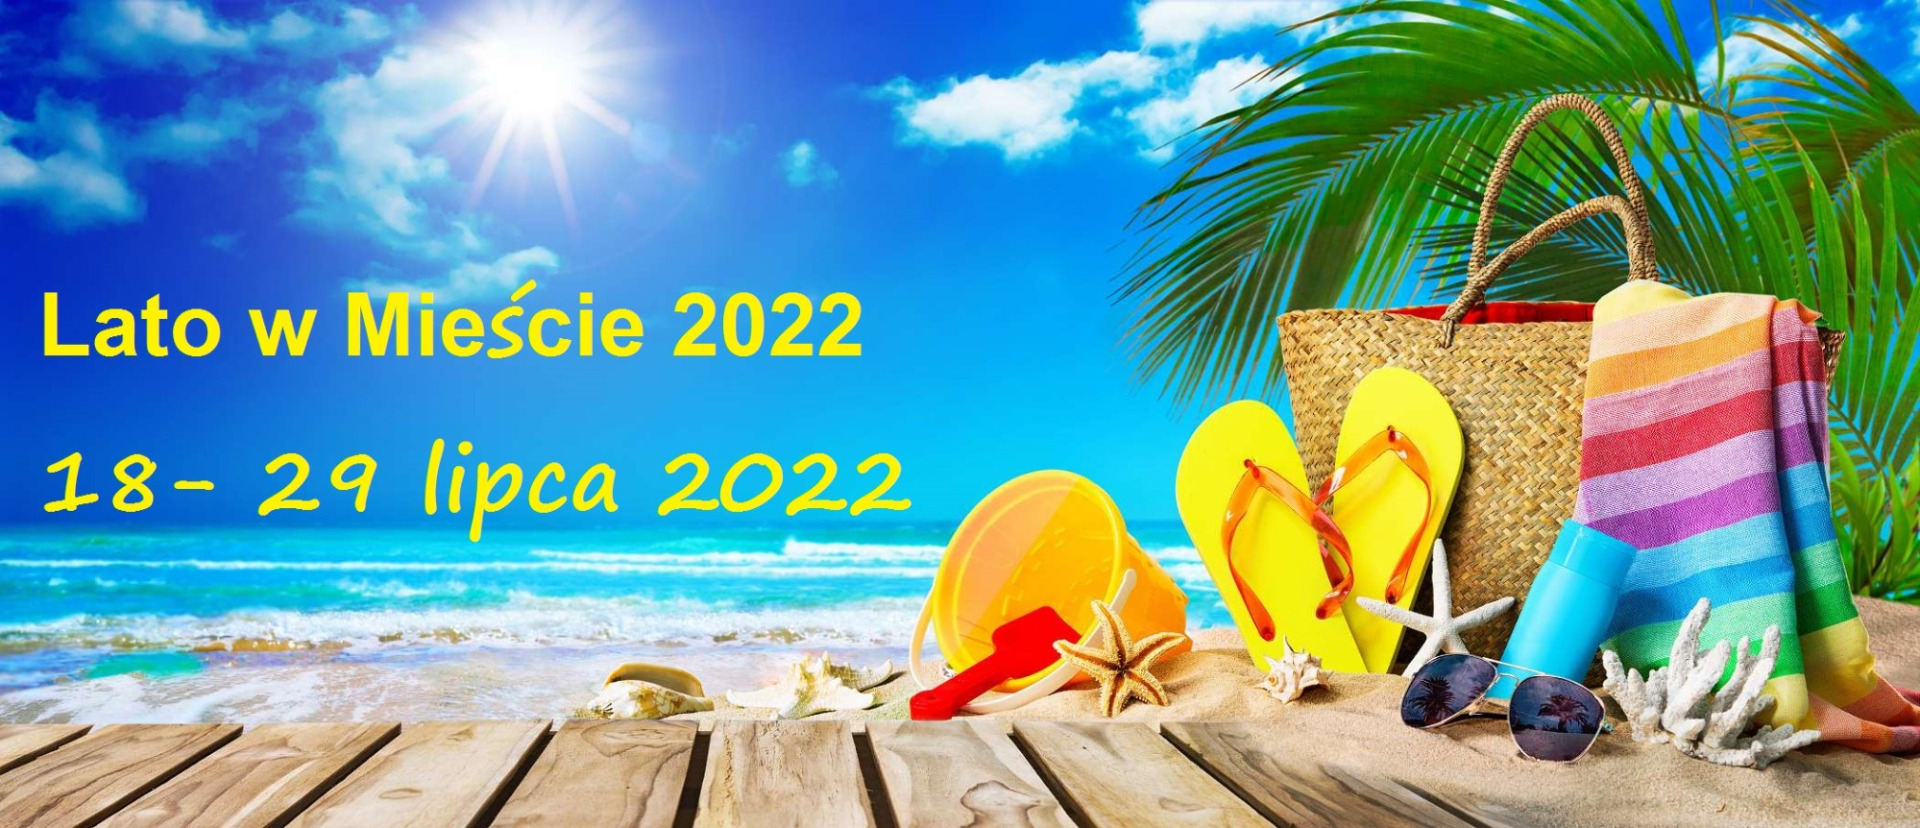 Lato w mieście 2022 - Obrazek 1